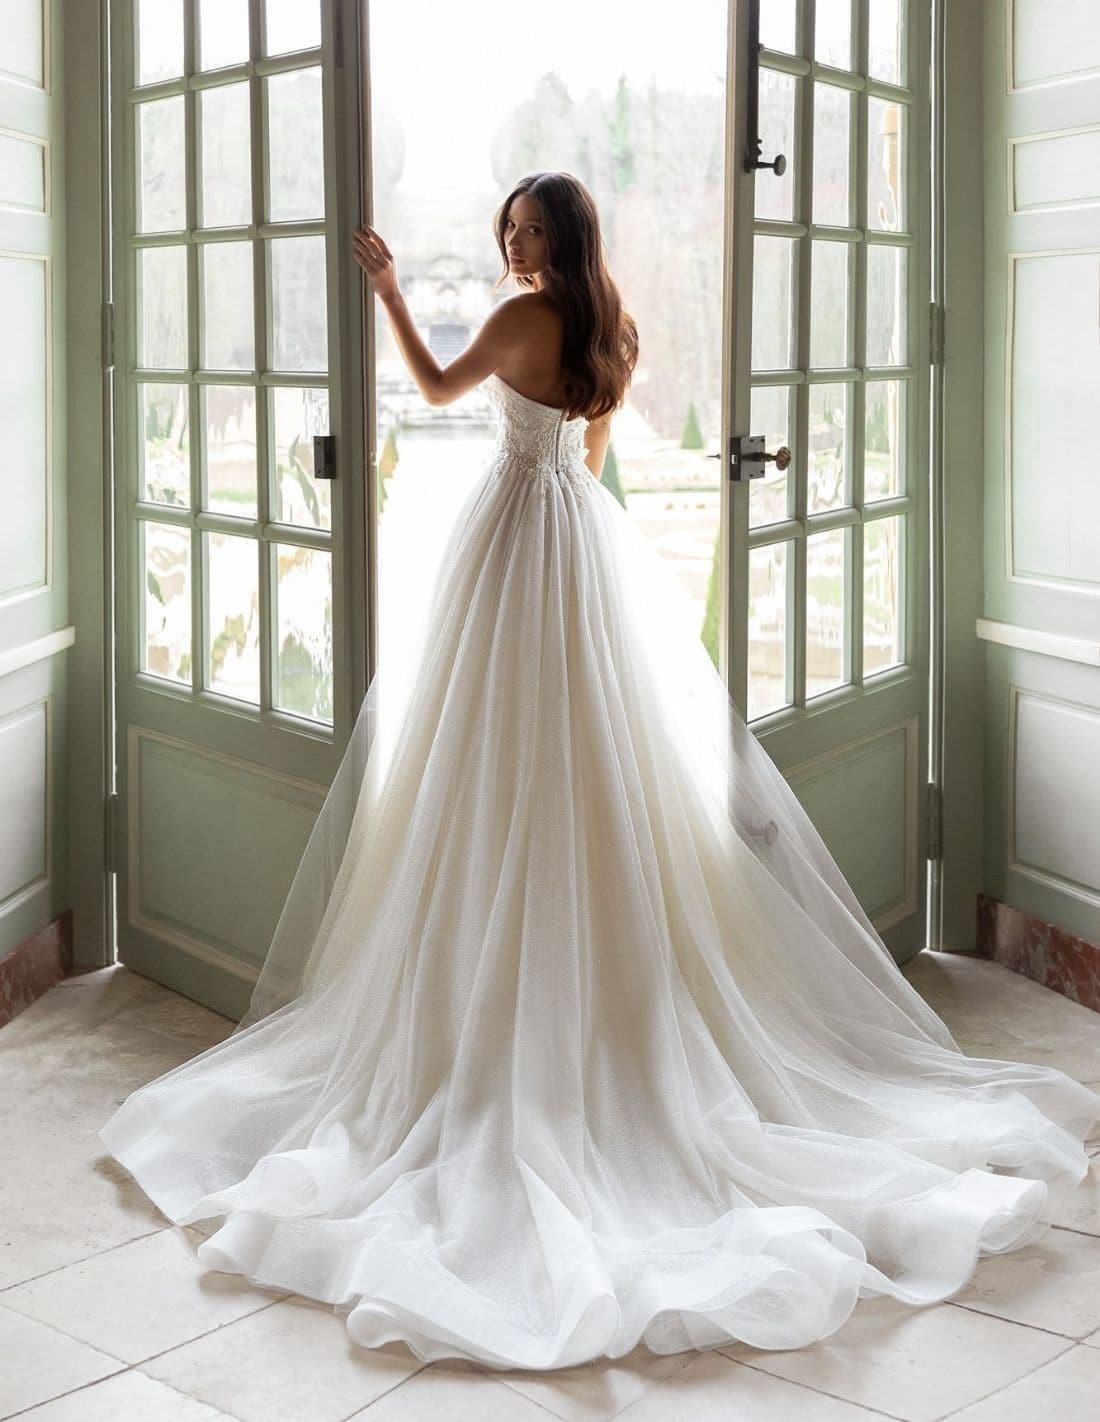 Vestido de novia con escote palabra de honor y corte princesa | INVITADISIMA